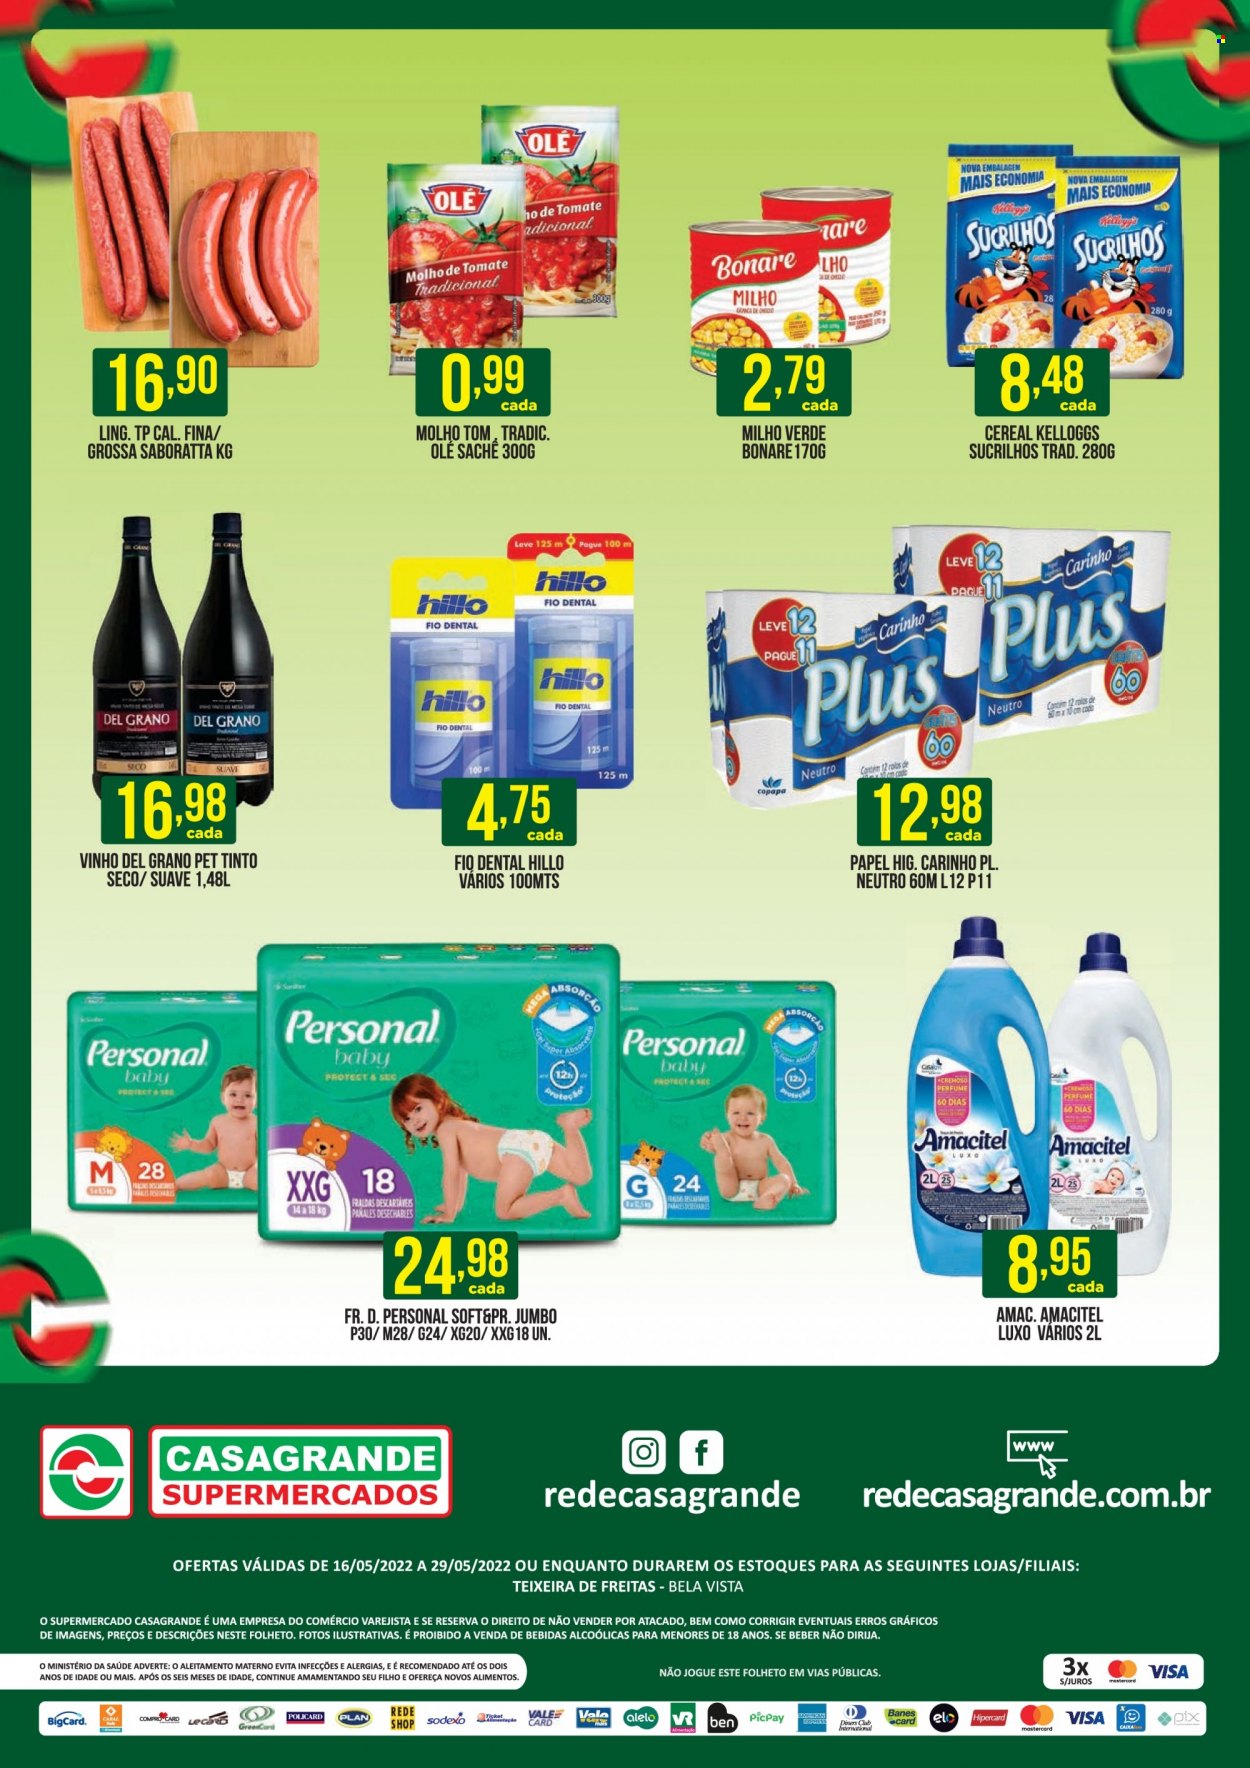 thumbnail - Folheto Casagrande Supermercados - 16/05/2022 - 29/05/2022 - Produtos em promoção - milho, molho, sucrilhos, cereais, molho de tomate, vinho, fralda descartável, fraldas, fio dental, perfume. Página 2.